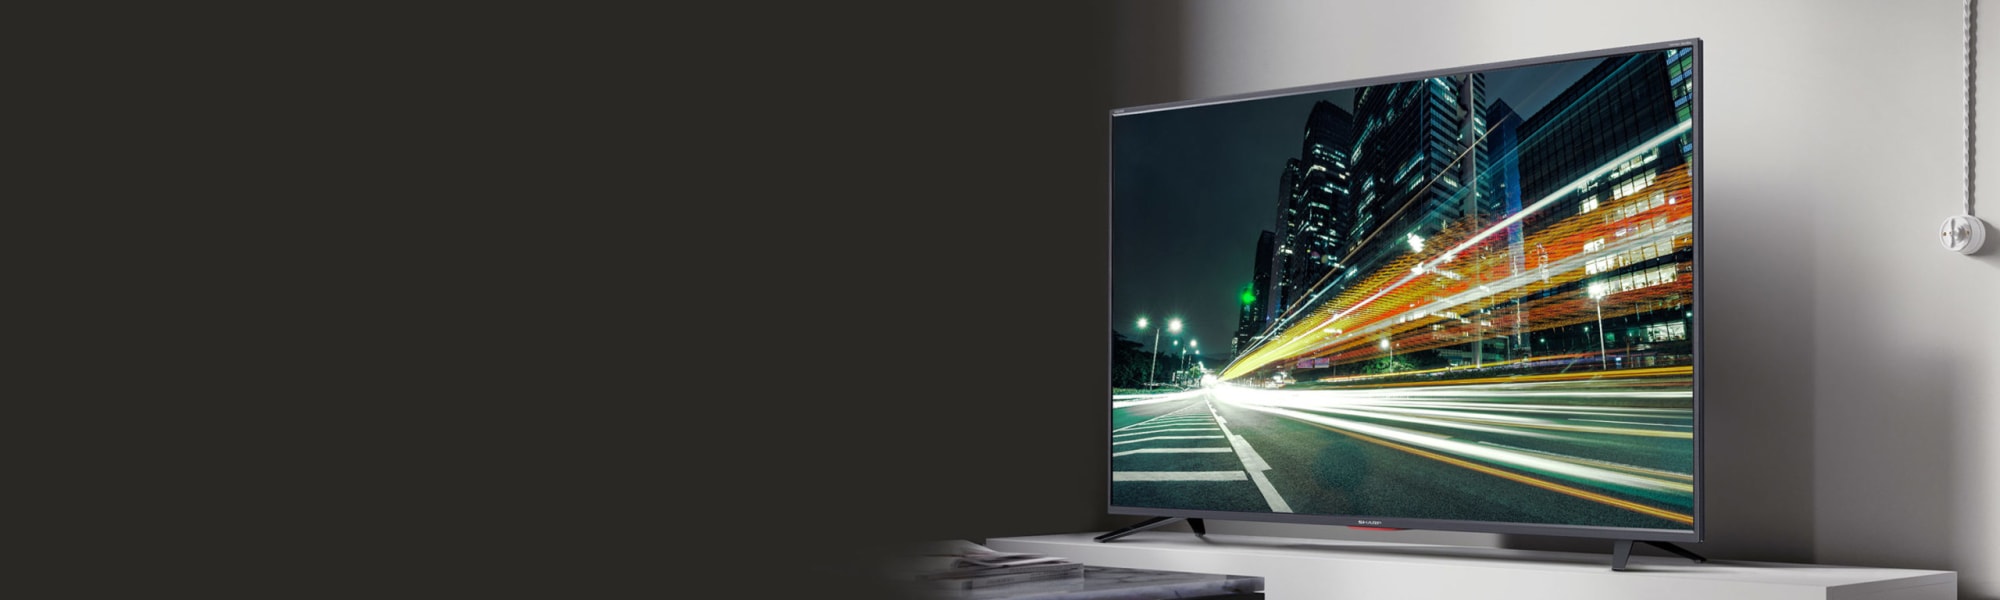 UHD - Europe TV\'s 4K Smart Sharp